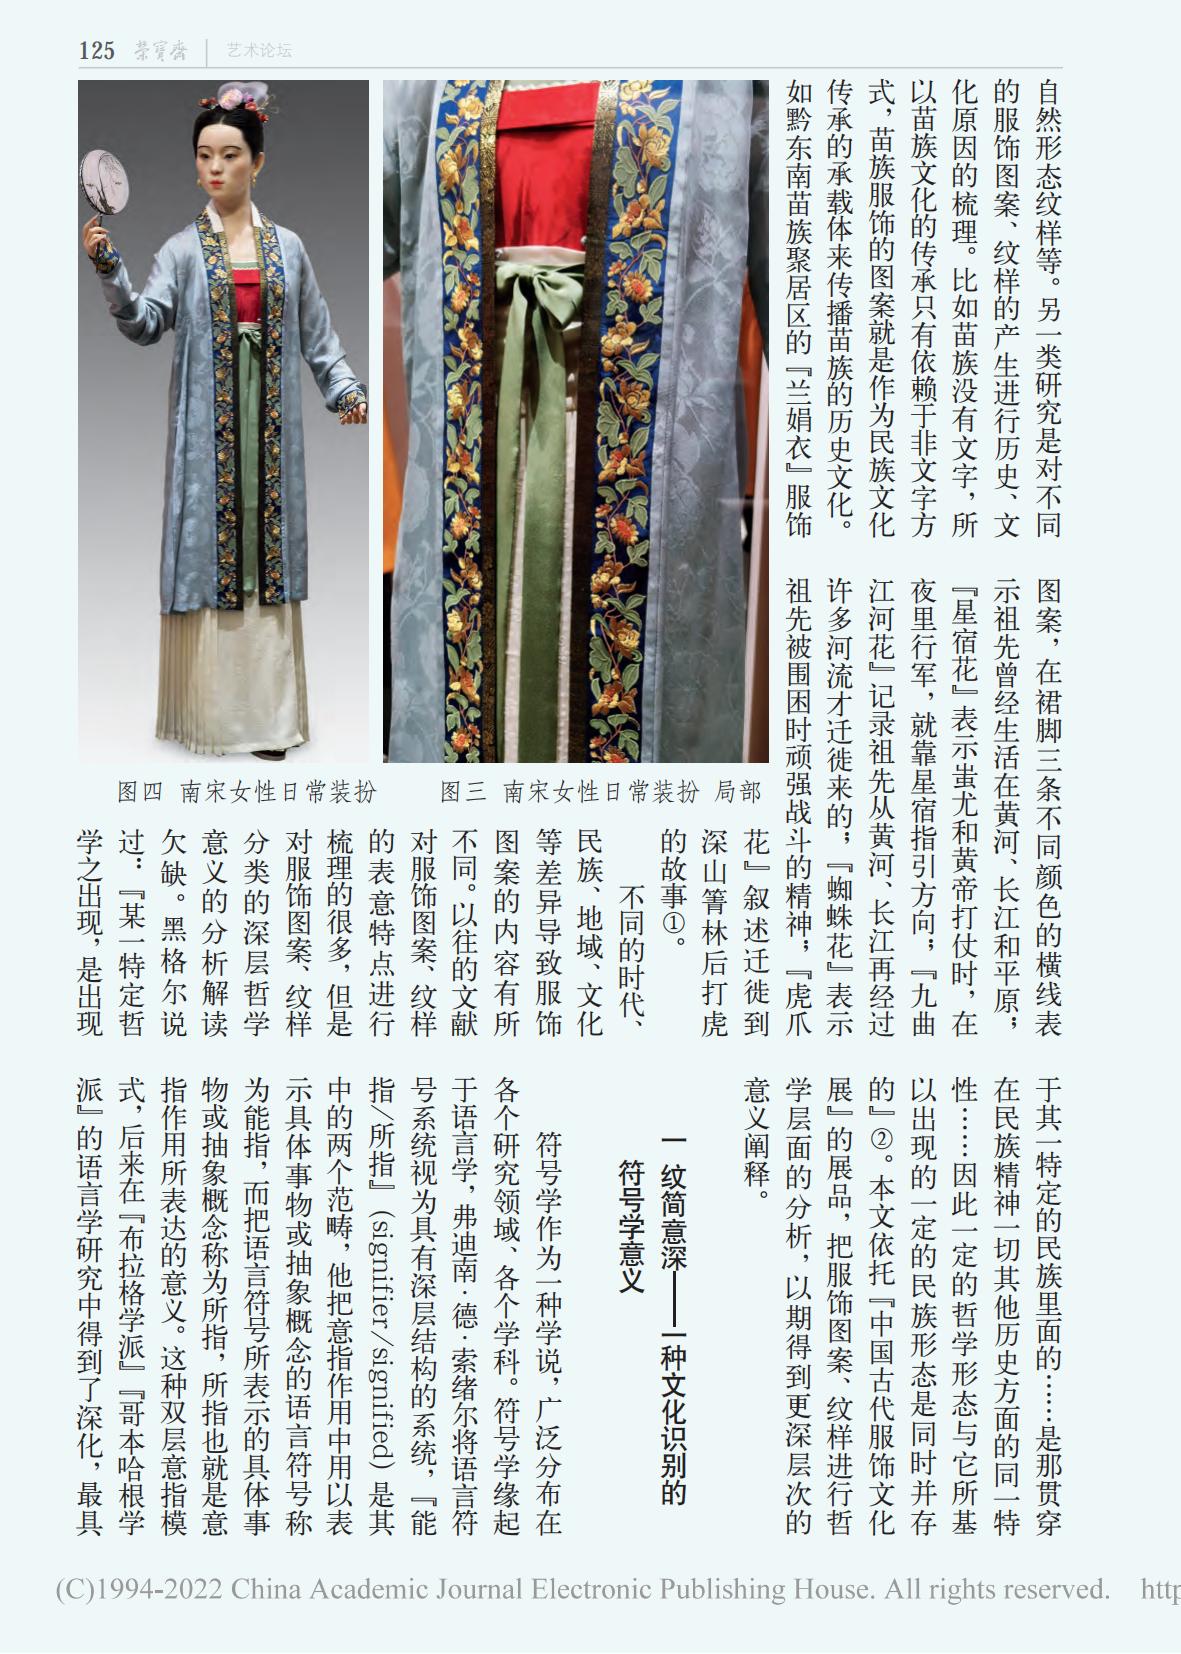 汉服唐装古装古代旗袍衣服连衣裙拍摄模特拍摄 - 广州北斗摄影公司